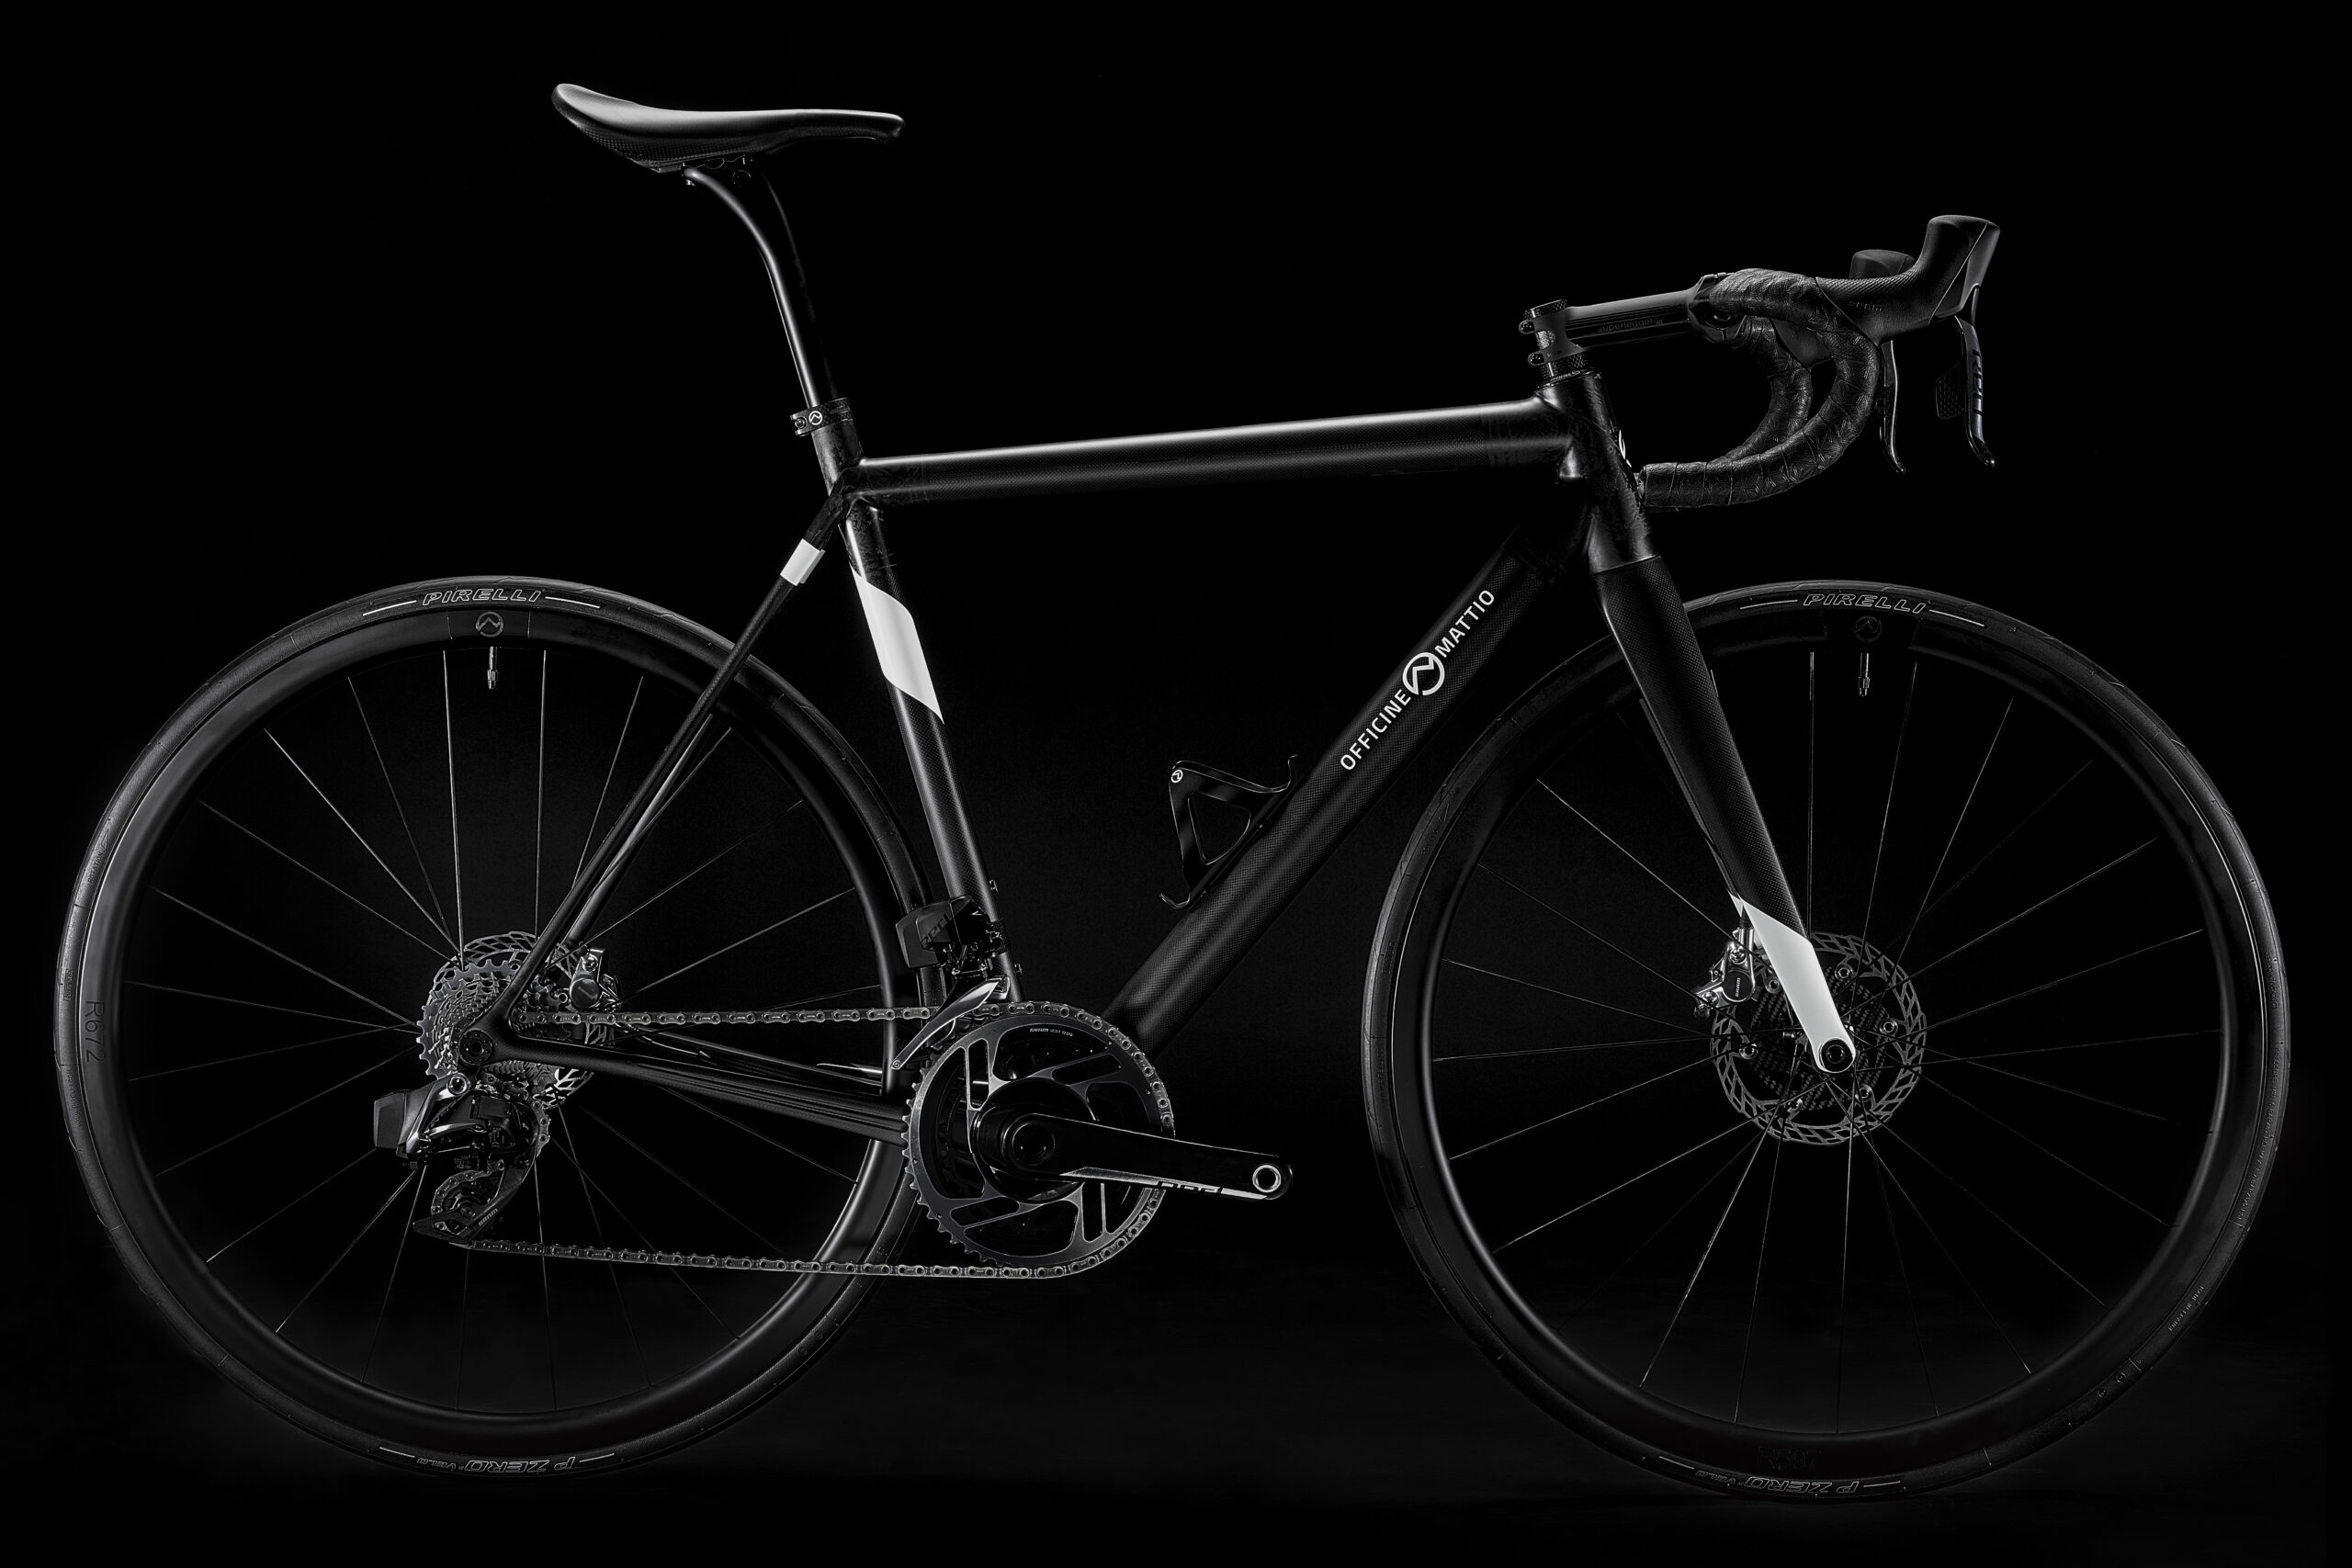 Bicicletta Officine Mattio modello SL DISC, produzione made in italy in fibra di carbonio, fotografia dettaglio laterale